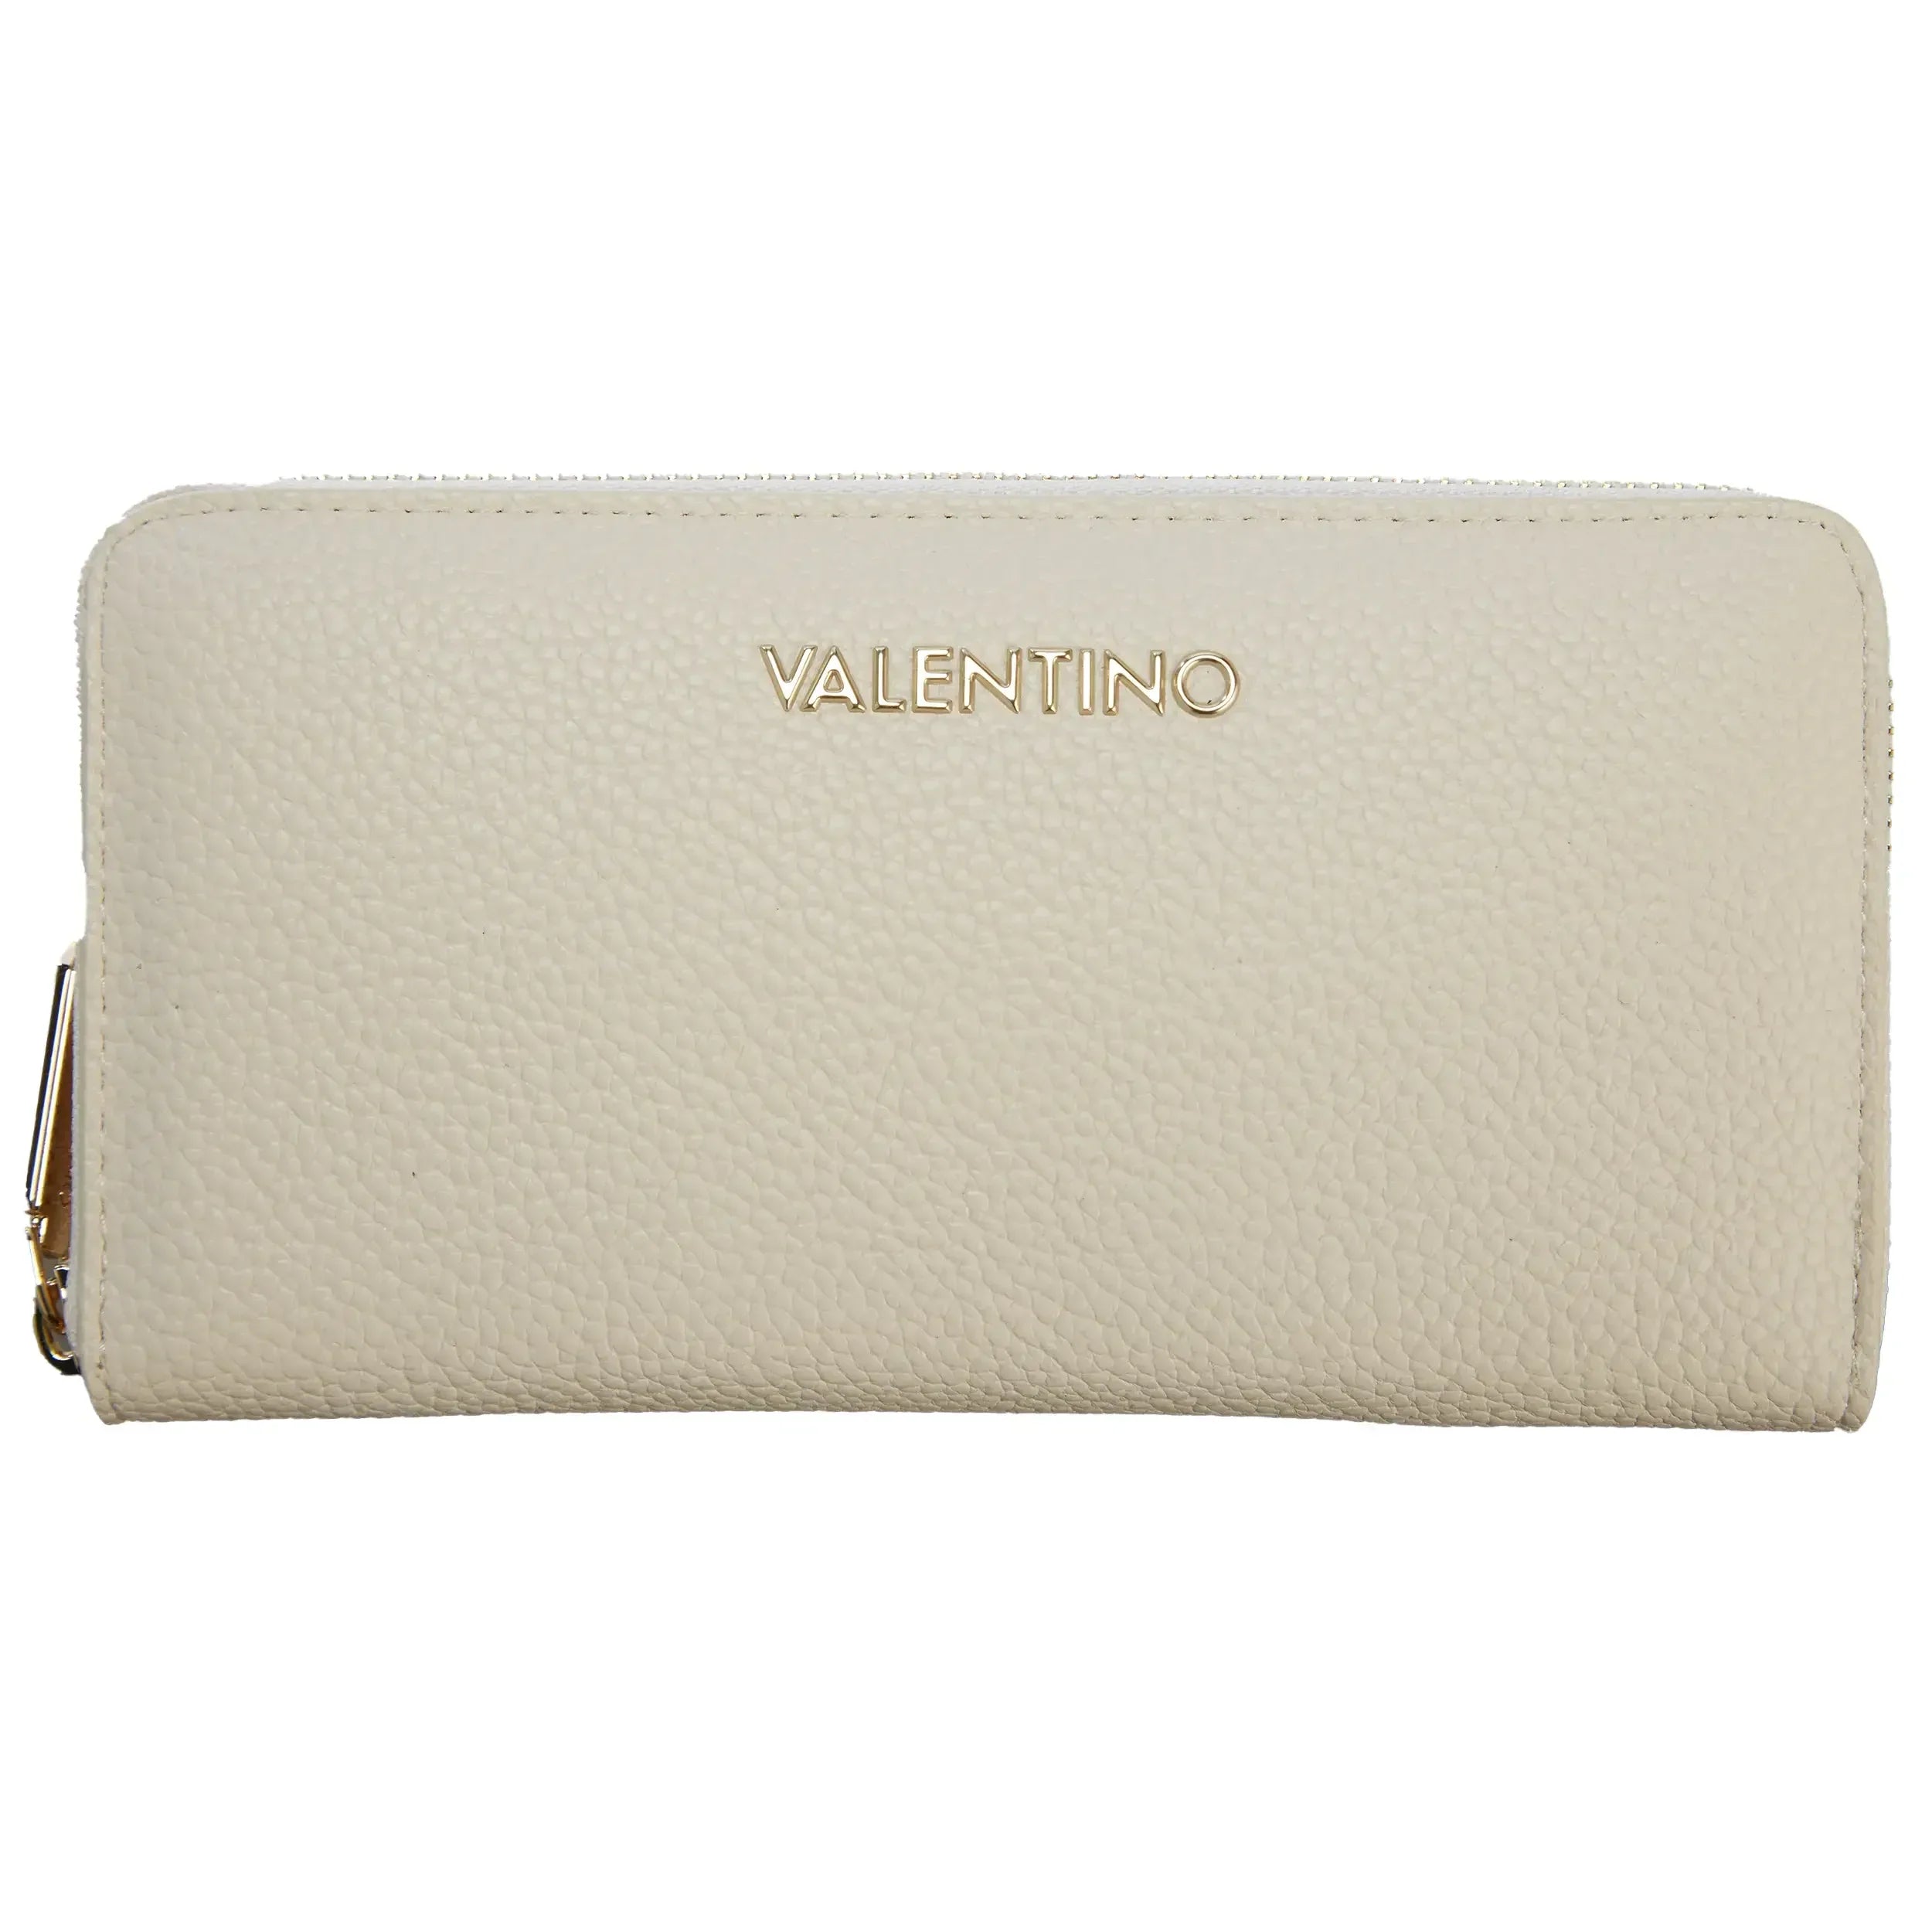 Women's Roman Stud Small Wallet In Nappa Leather by Valentino Garavani |  Coltorti Boutique